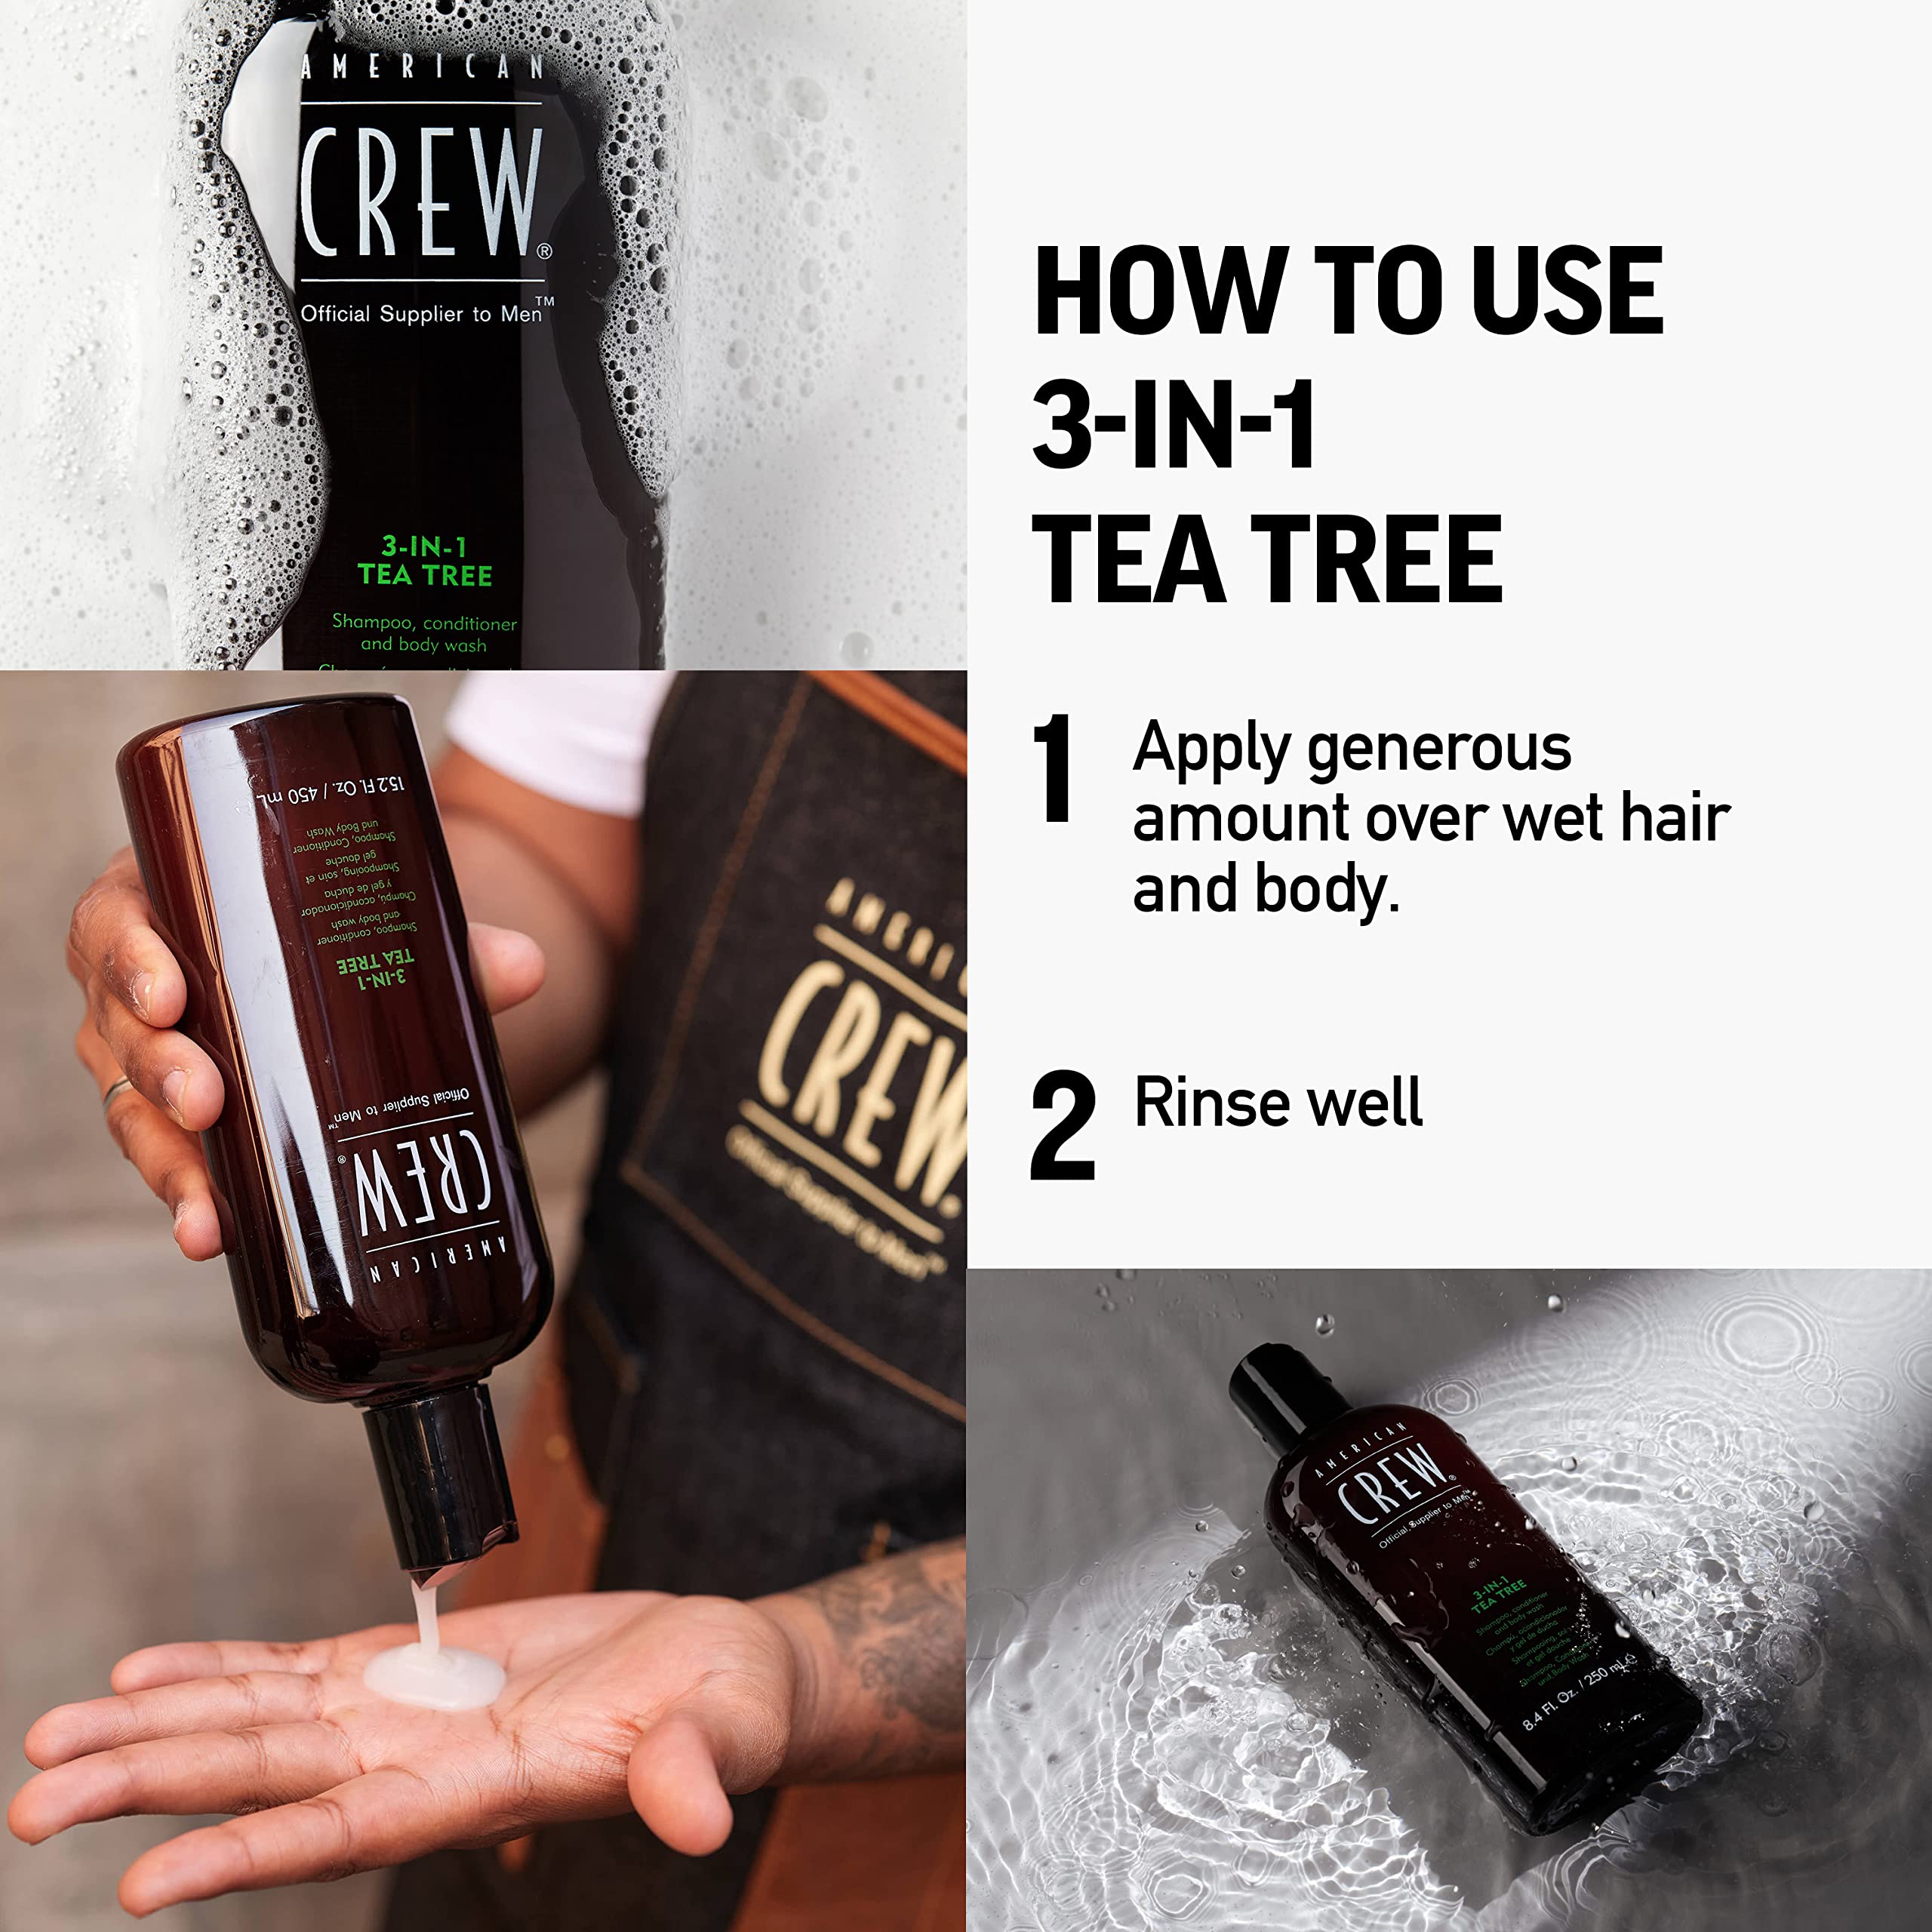 AMERICAN CREW Shampoo, Conditioner & Body Wash for Men, 3-in-1, Tea Tree Scent, 8.4 Fl Oz